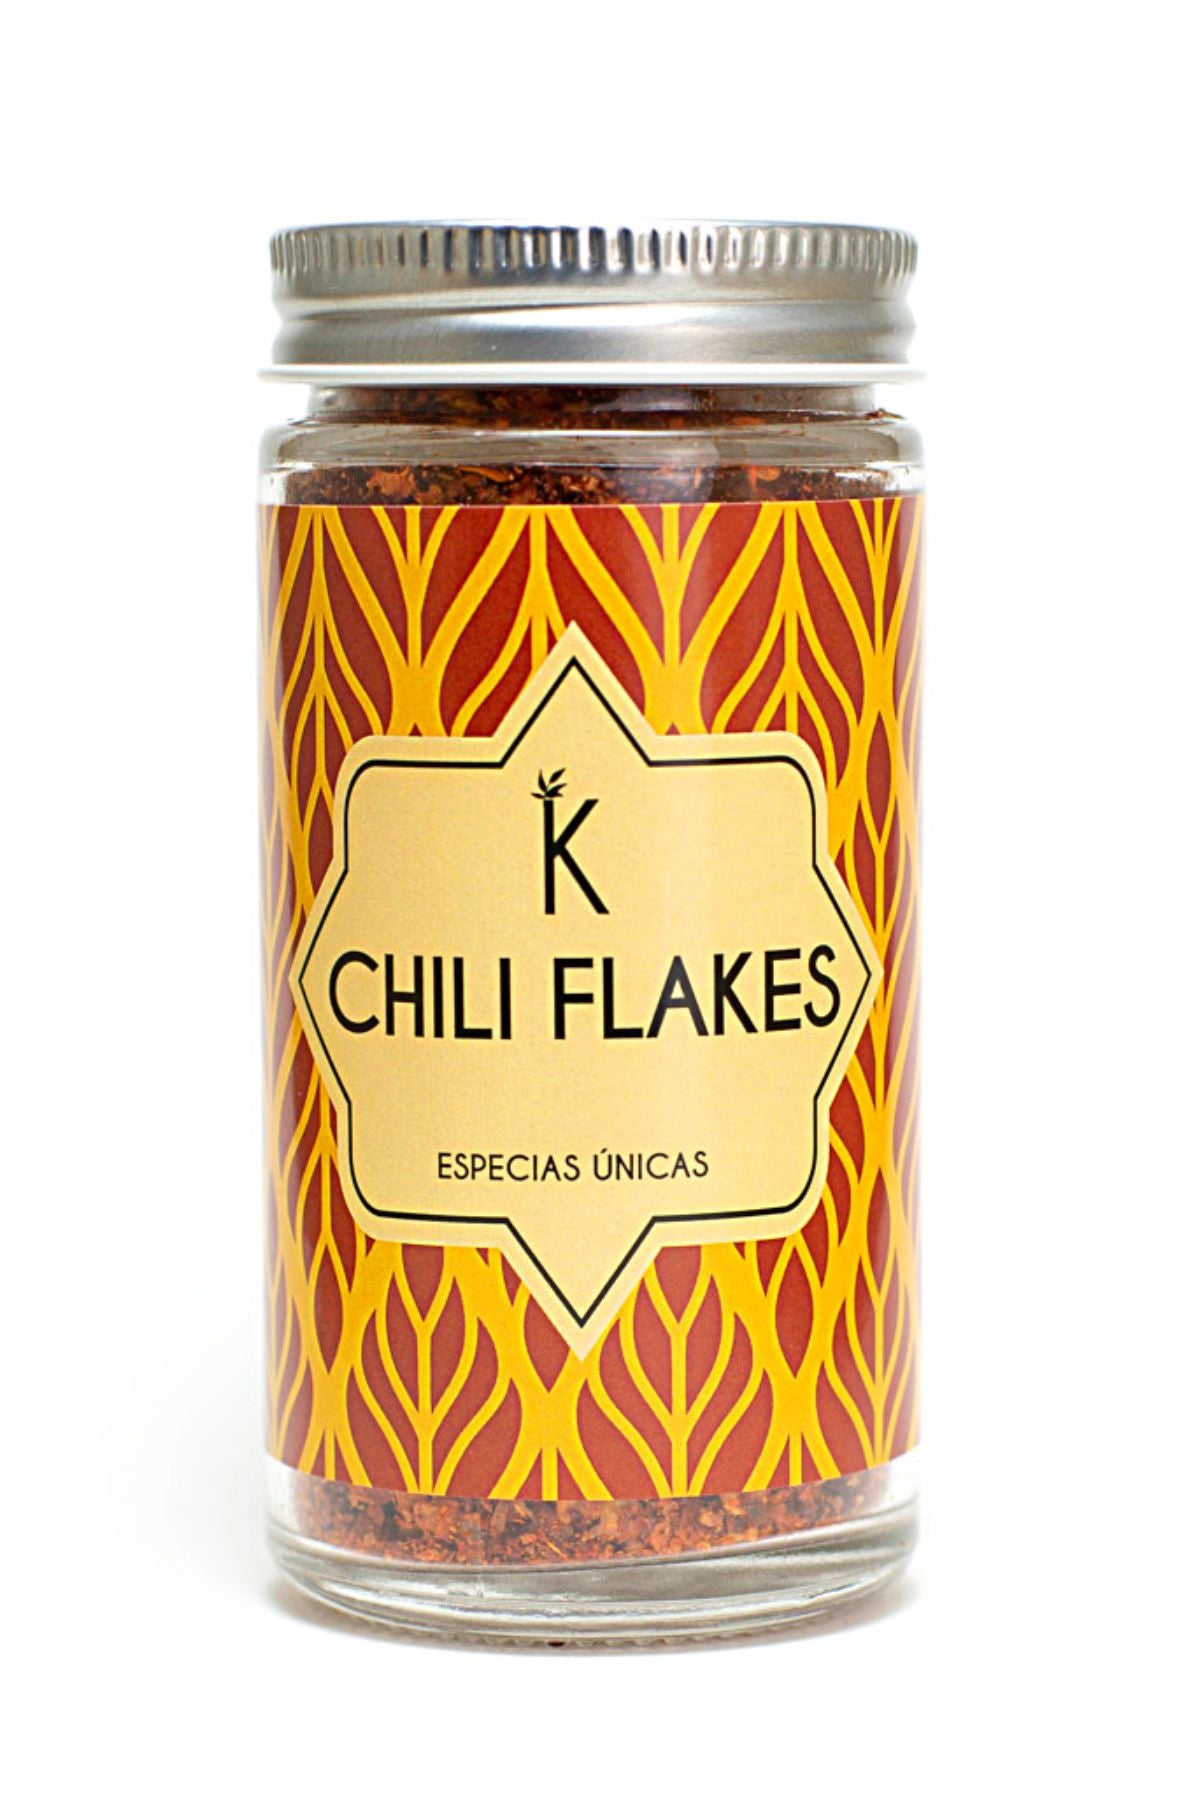 Chili flakes